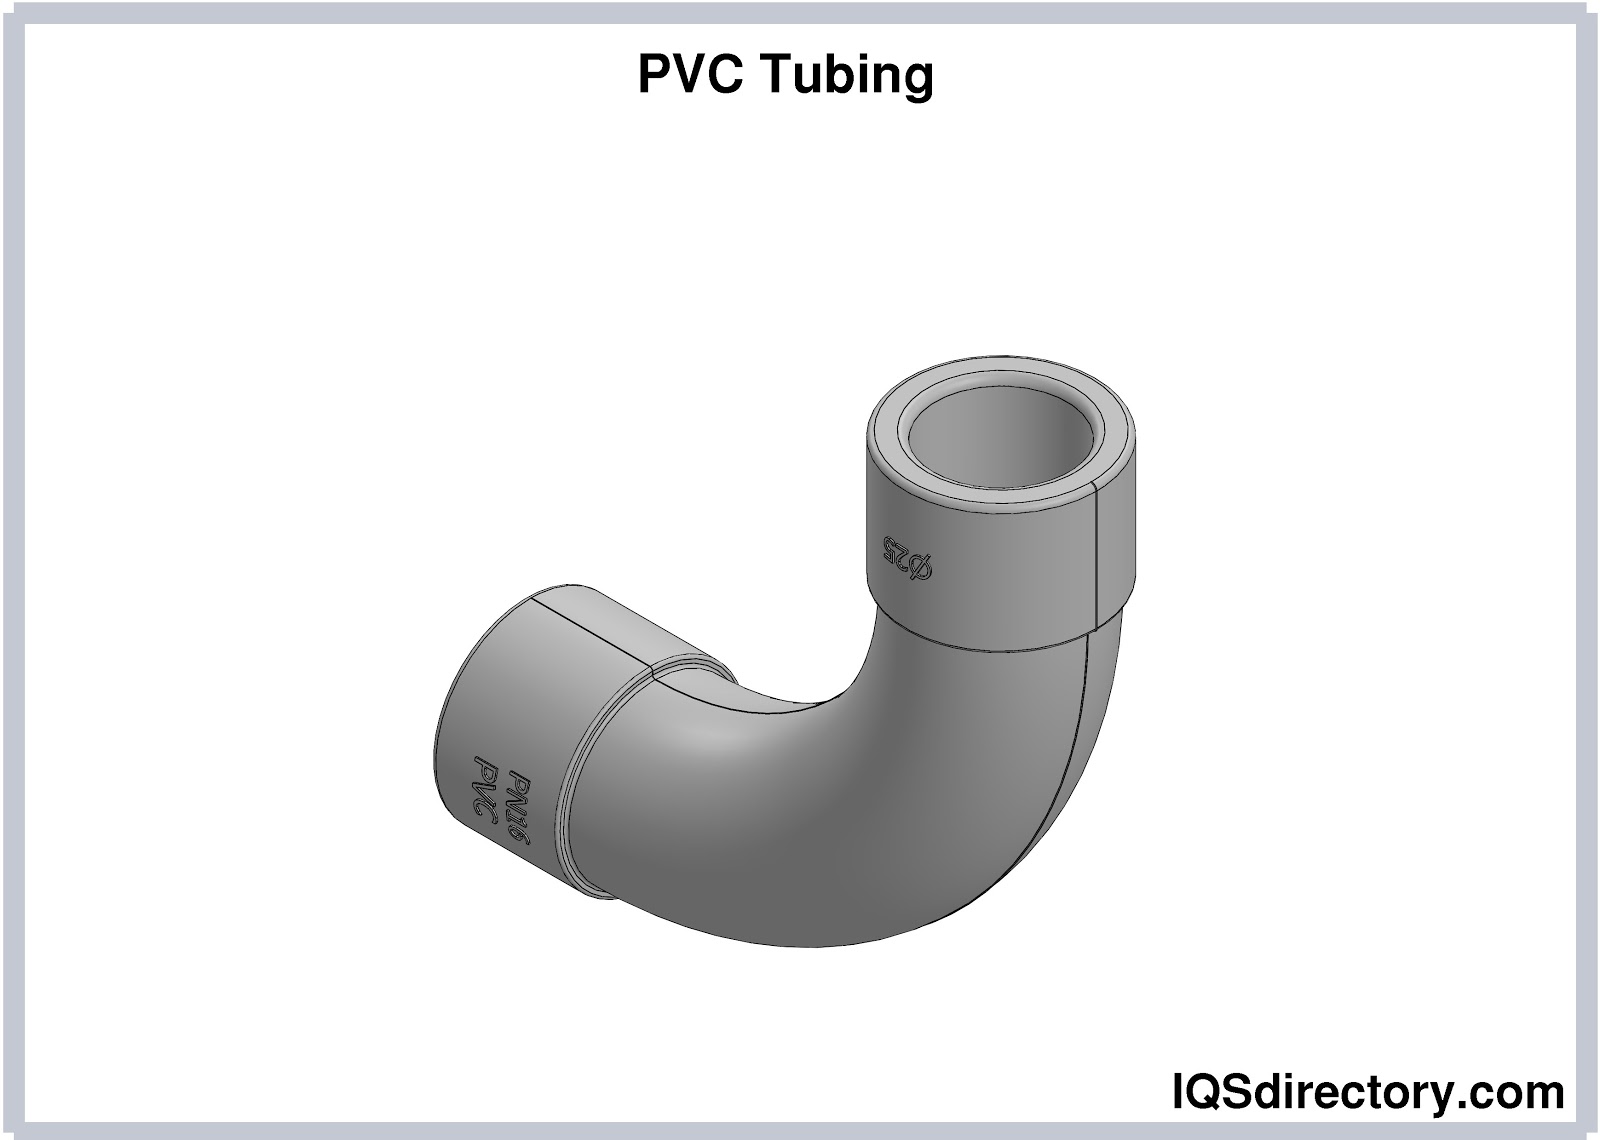 PVC Tubing